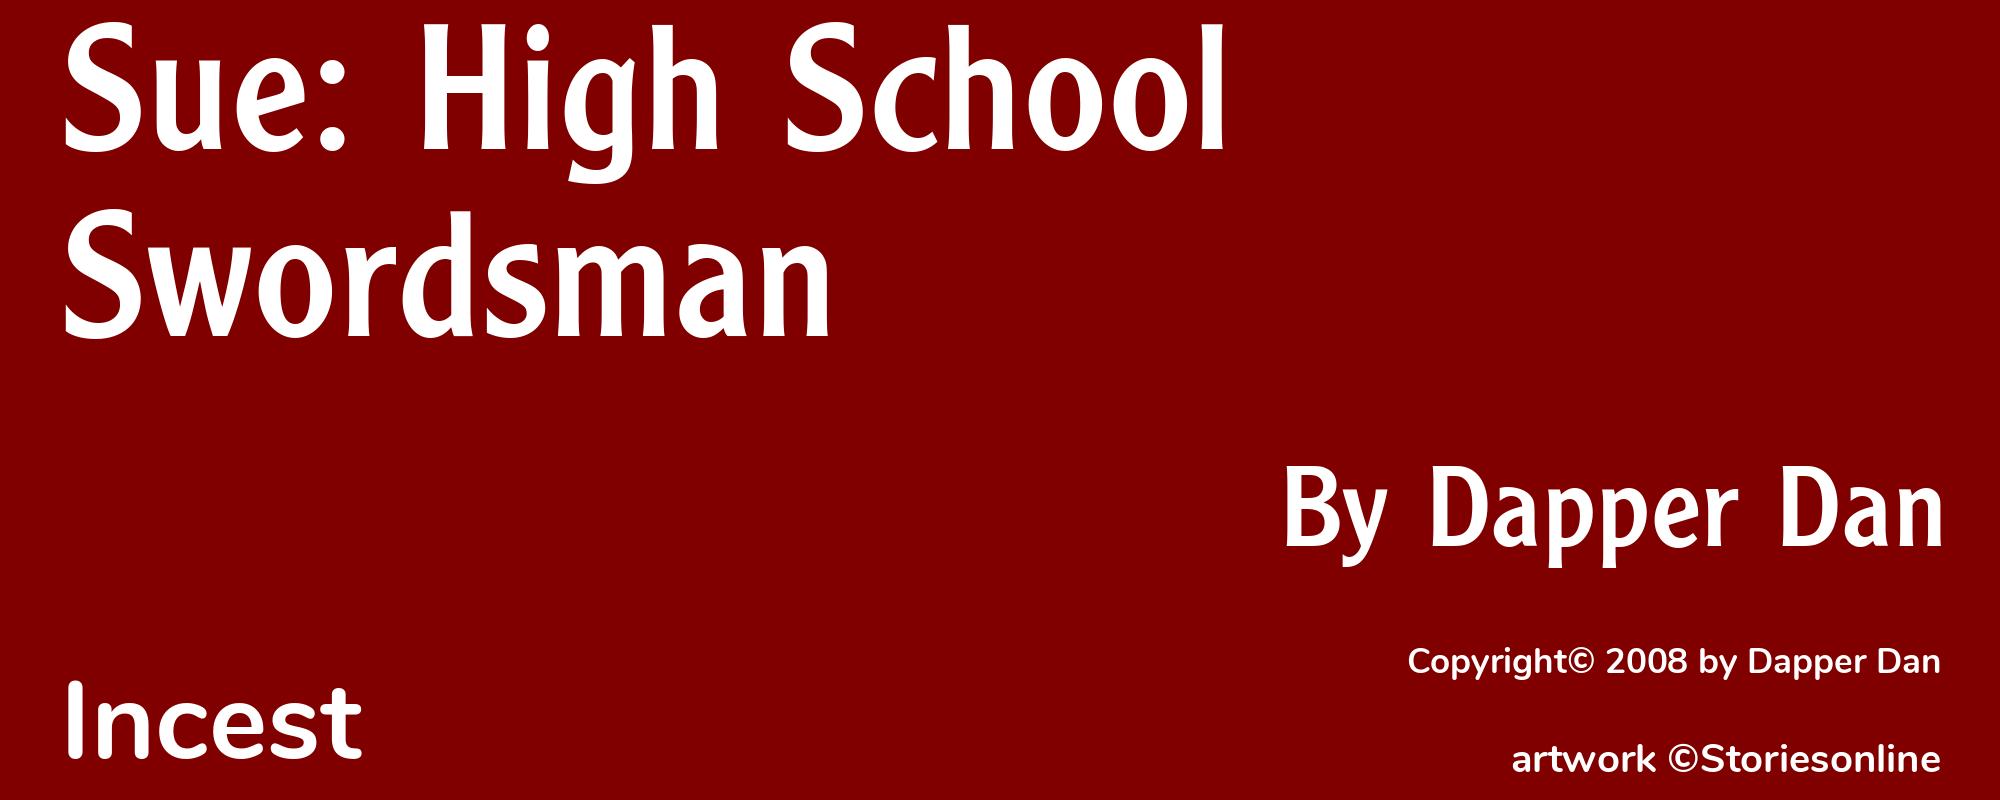 Sue: High School Swordsman - Cover